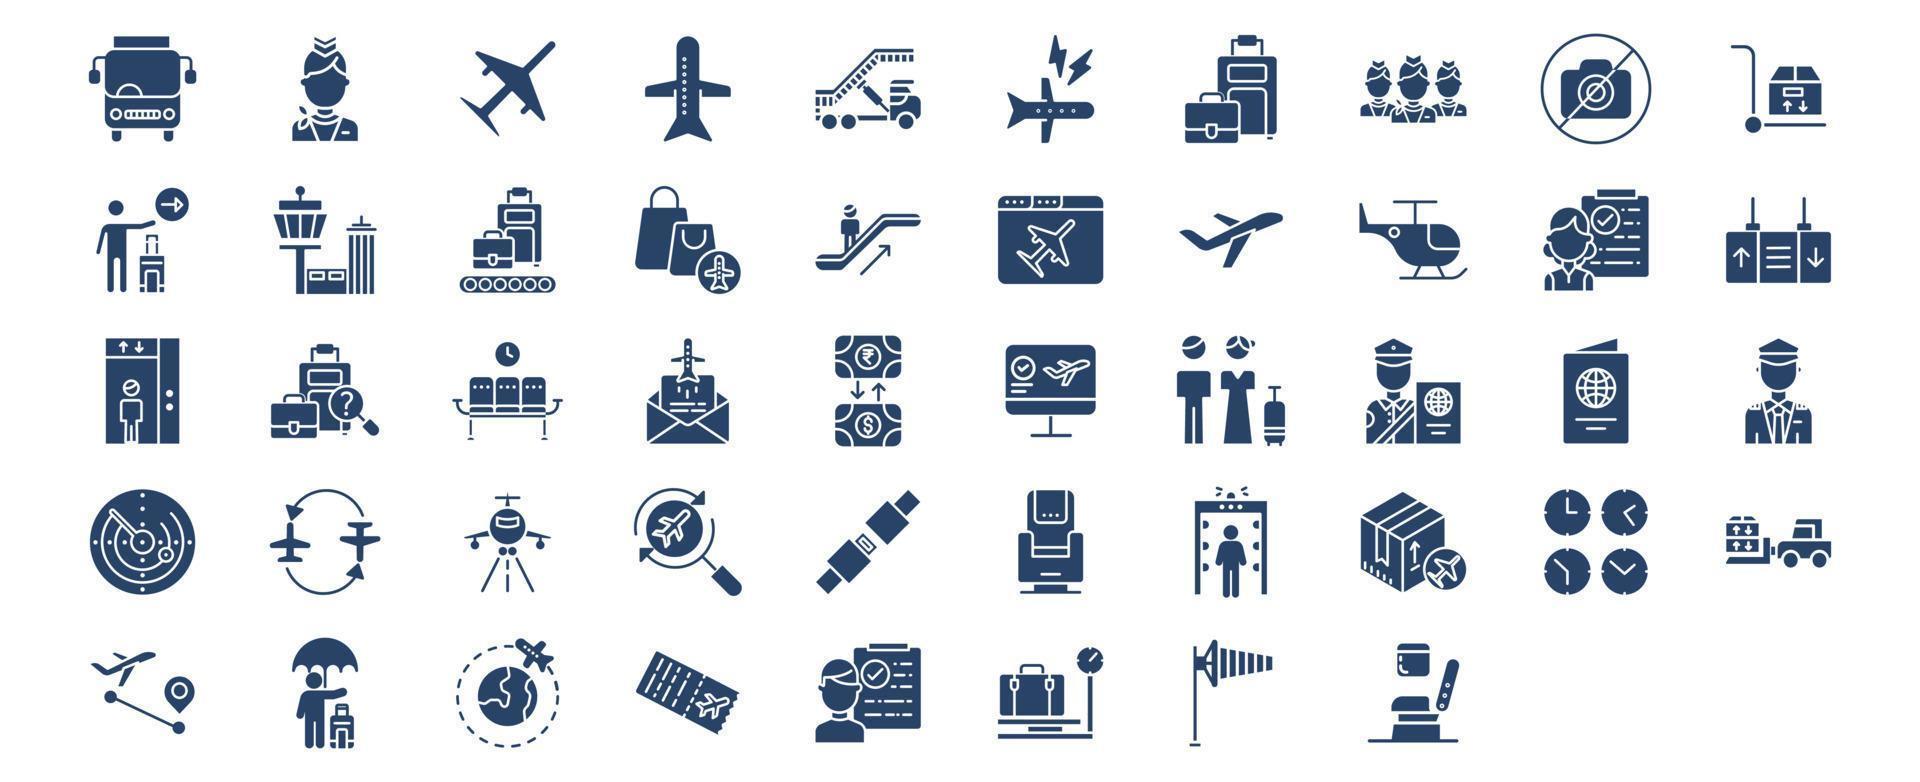 coleção de ícones relacionados a viagens de aviação e aeroporto, incluindo ícones como aeromoça, aeronave, bagagem, duty free, passageiro e muito mais. ilustrações vetoriais, conjunto perfeito de pixels vetor